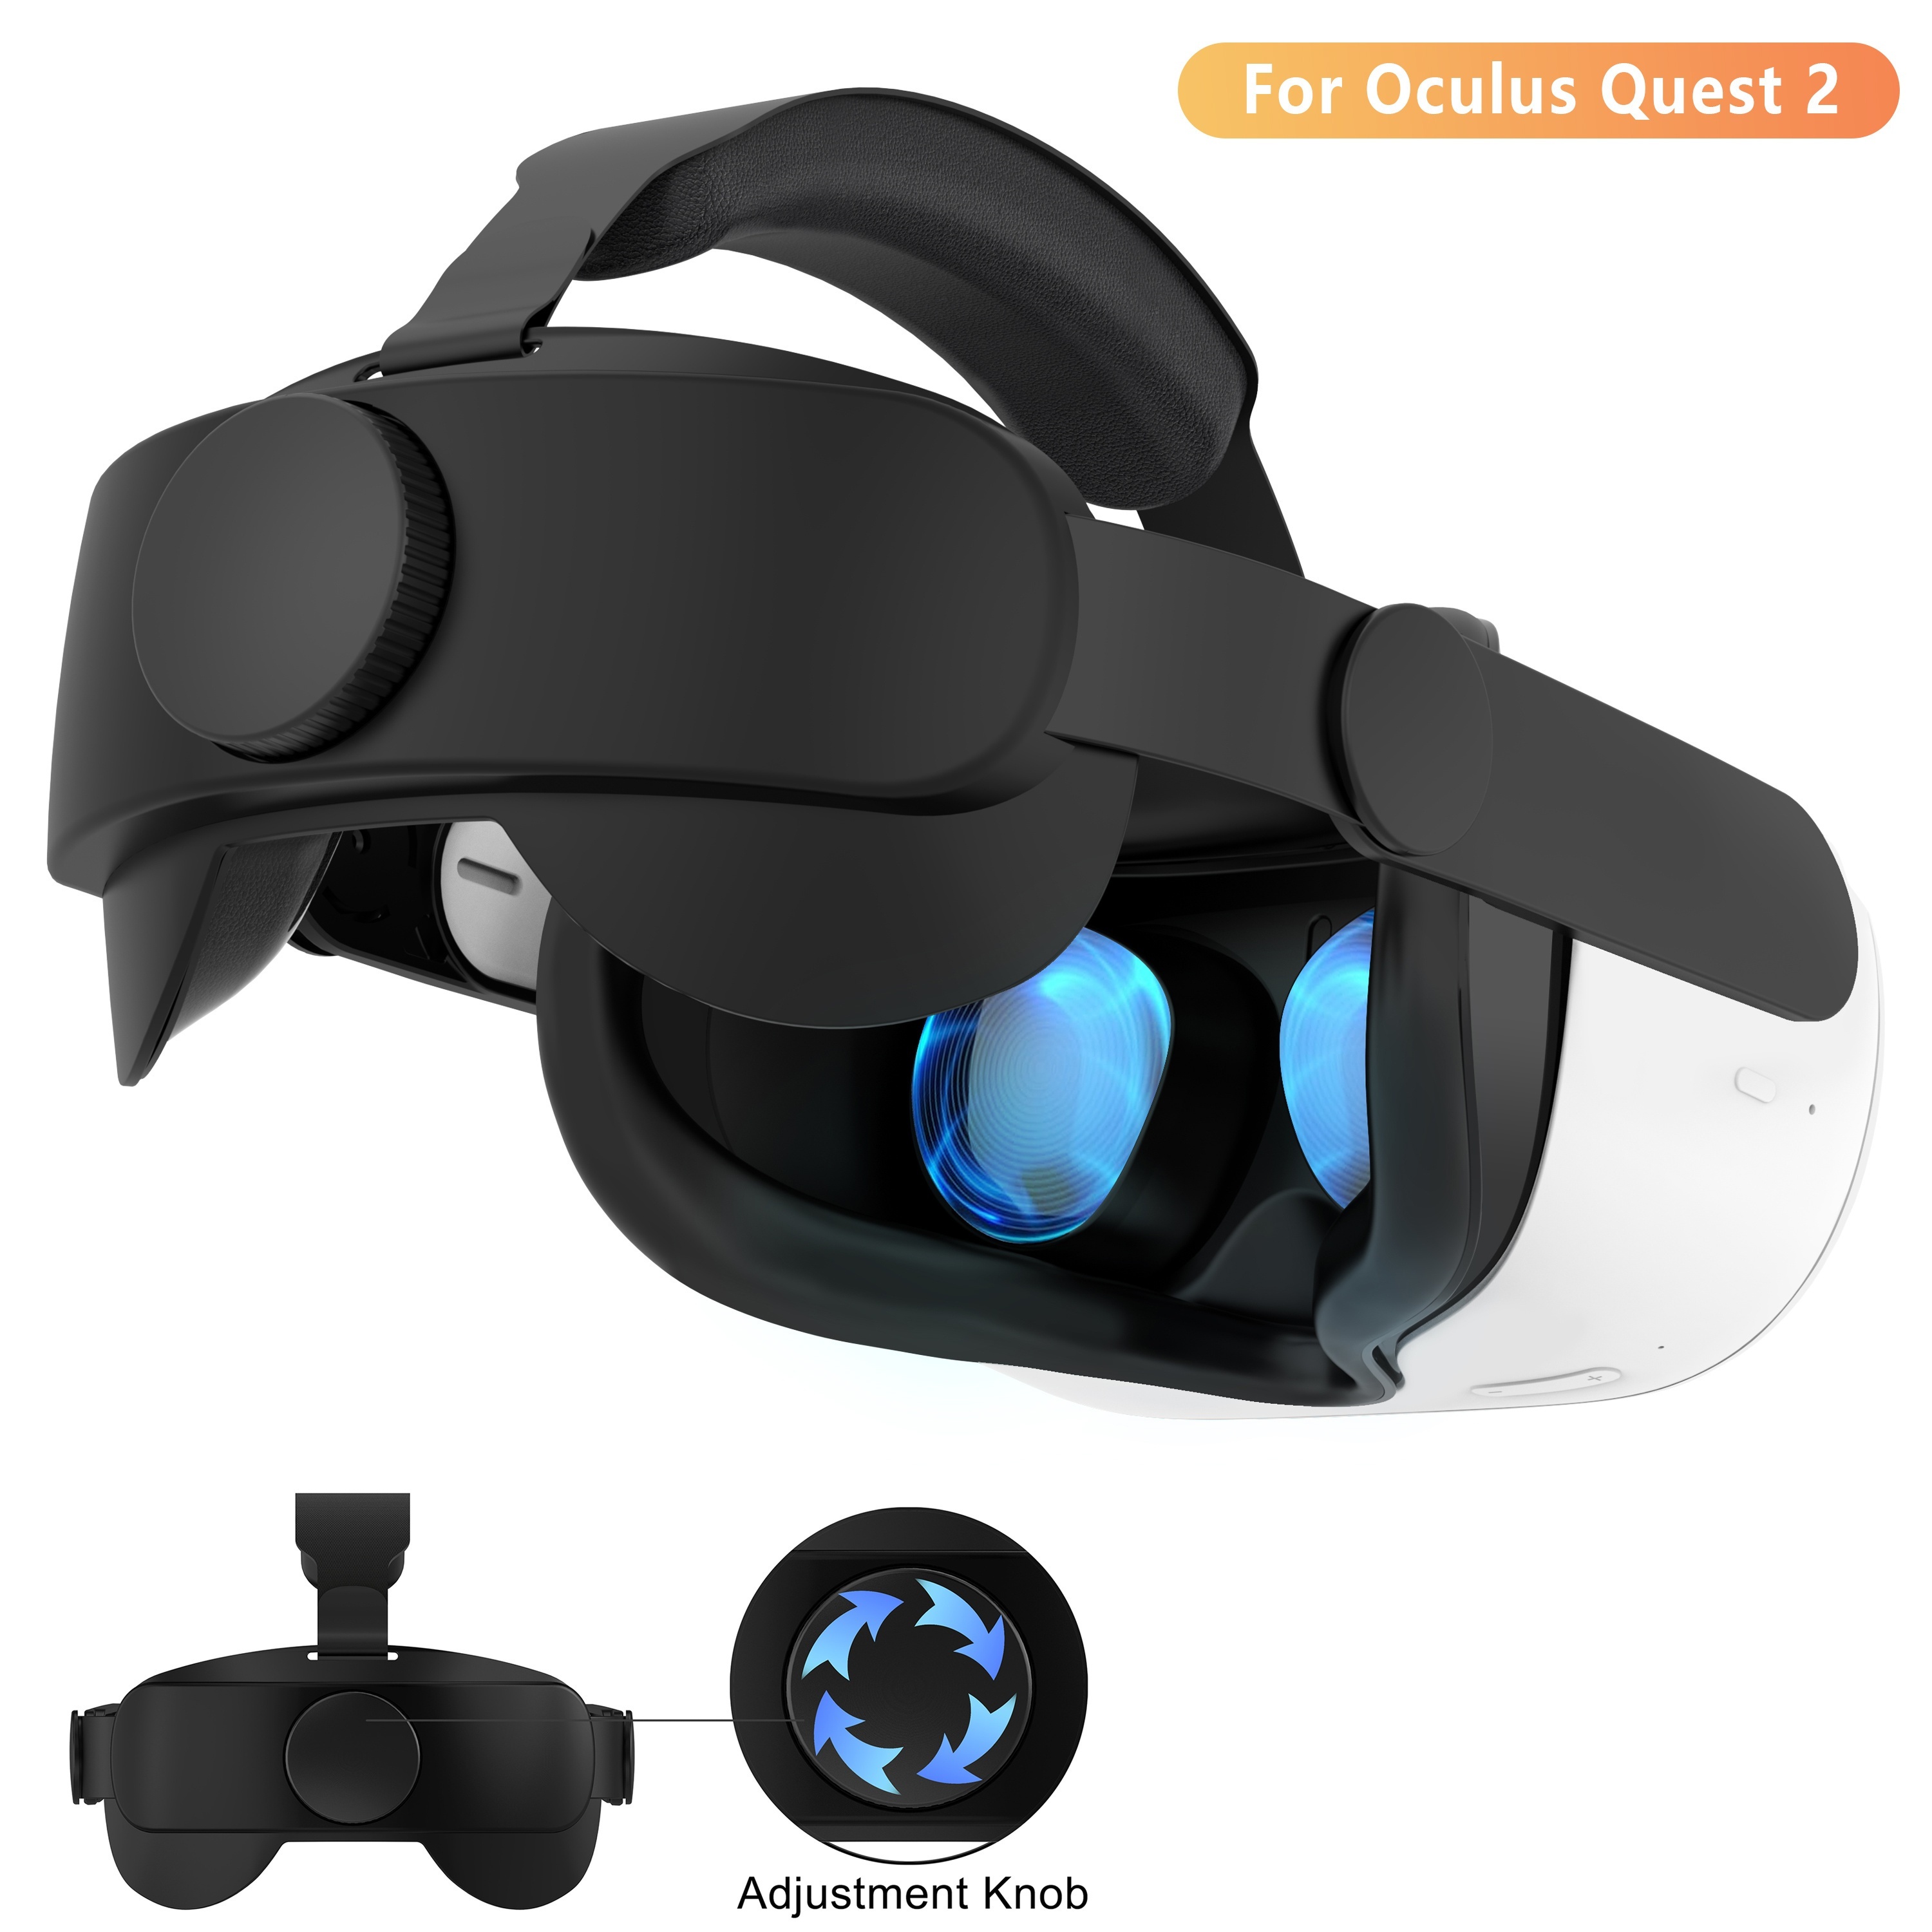  Correa para la cabeza compatible con Oculus Quest 3, accesorios Meta  Quest 3, correa ajustable Elite repuesto para mayor comodidad soporte e  inmersión de juegos en realidad virtual : Videojuegos